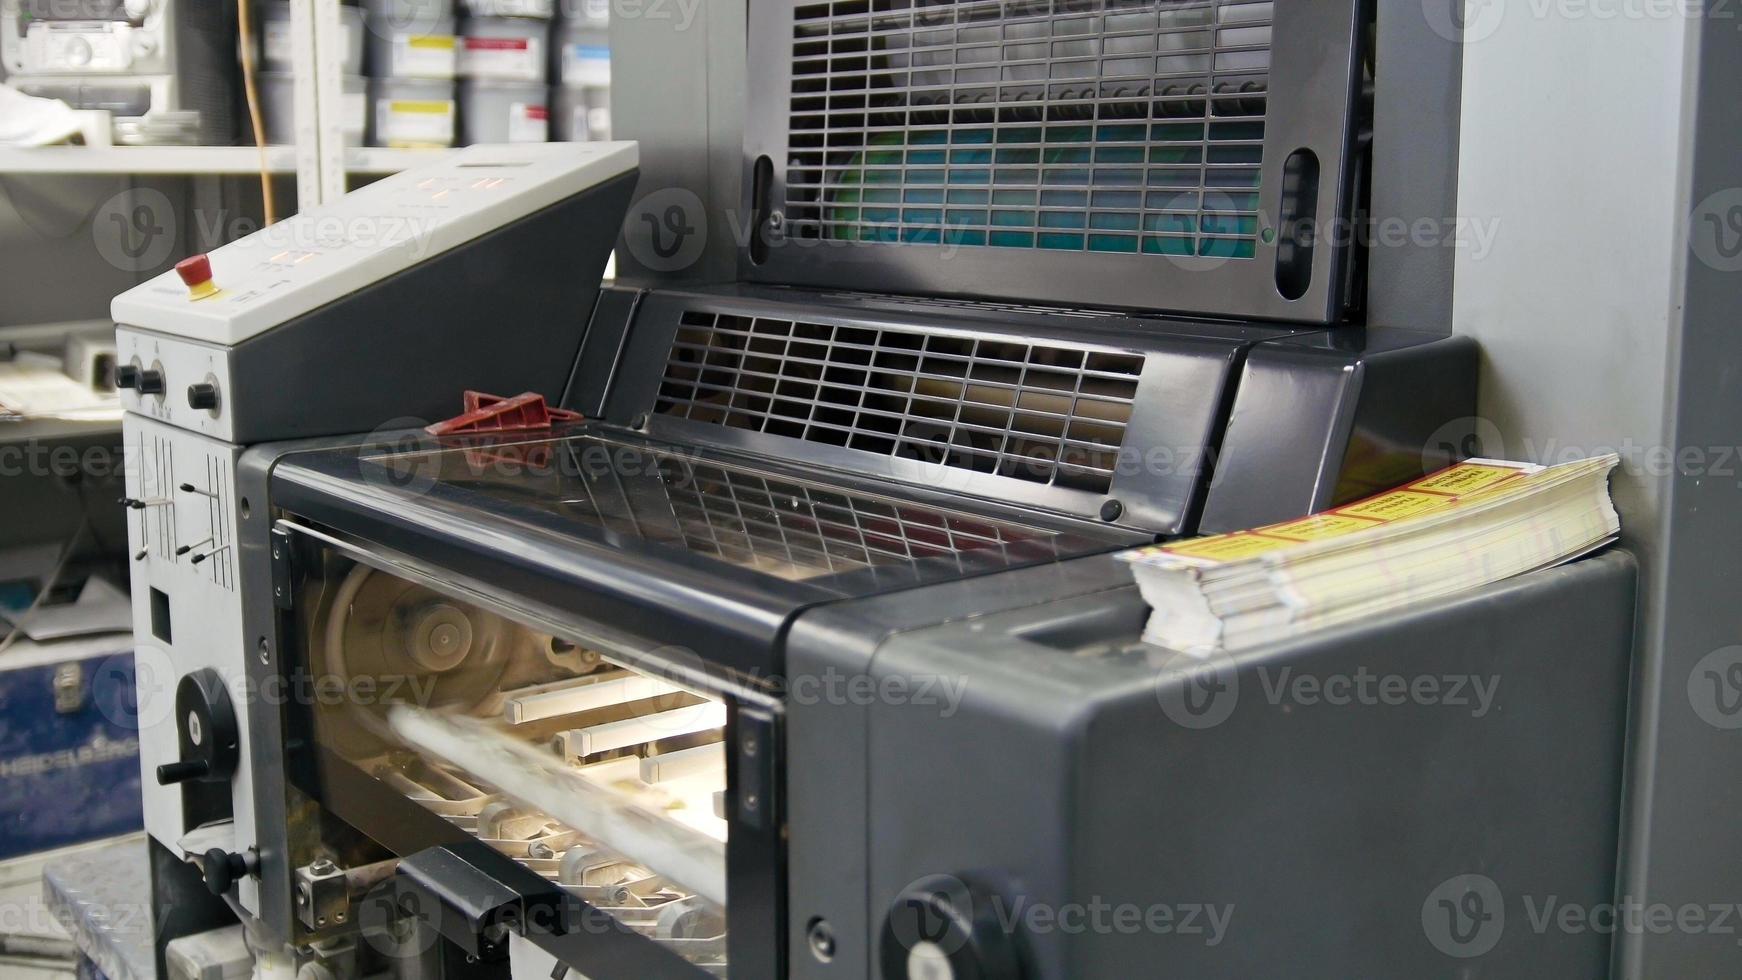 machine travaillant dans une imprimerie, industrie du polygraphe - équipement de nettoyage, vue de face photo